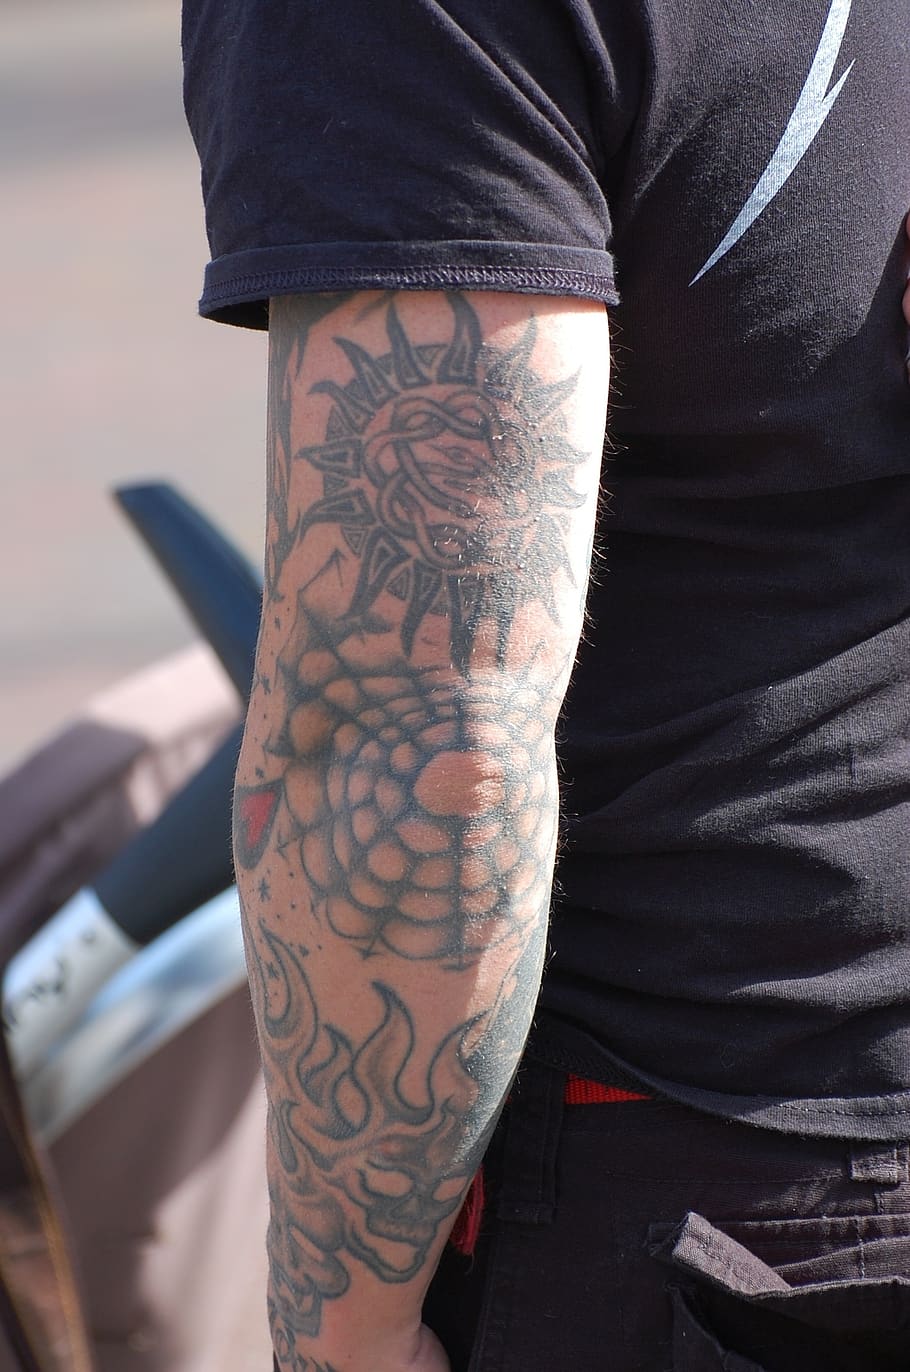 tatuaje, brazo, oscuro, hombre, una persona, estilos de vida, sección media, personas reales, parte del cuerpo humano, mano humana